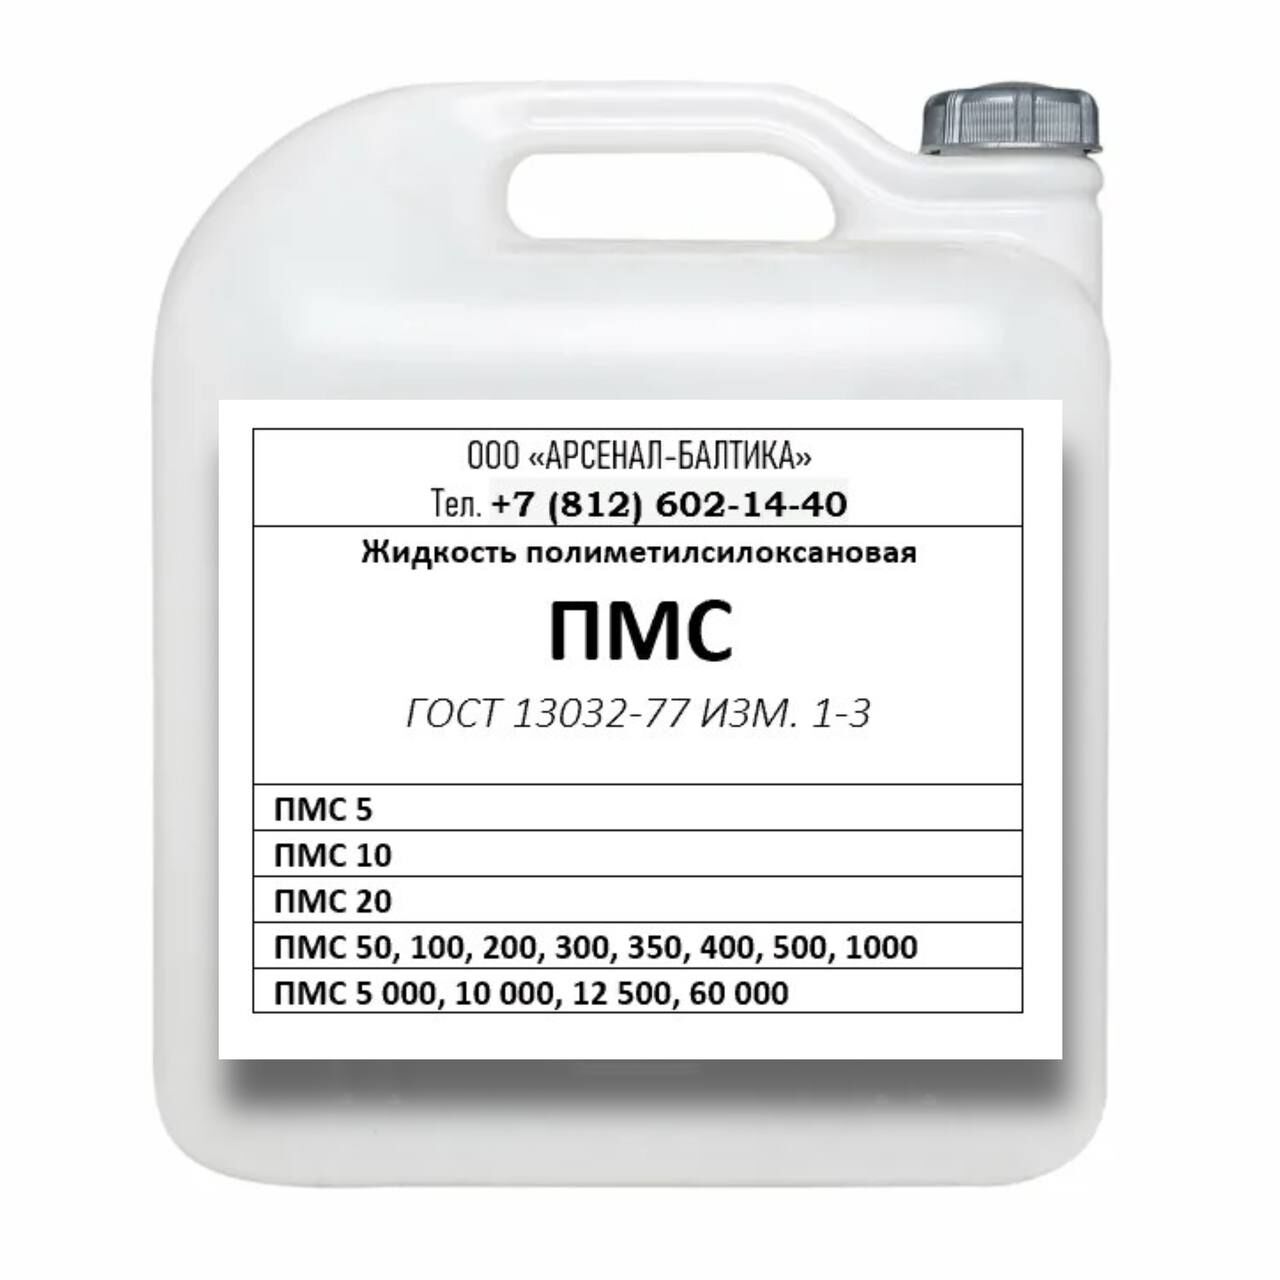 Жидкость полиметилсилоксановая ПМС-100, 5 кг